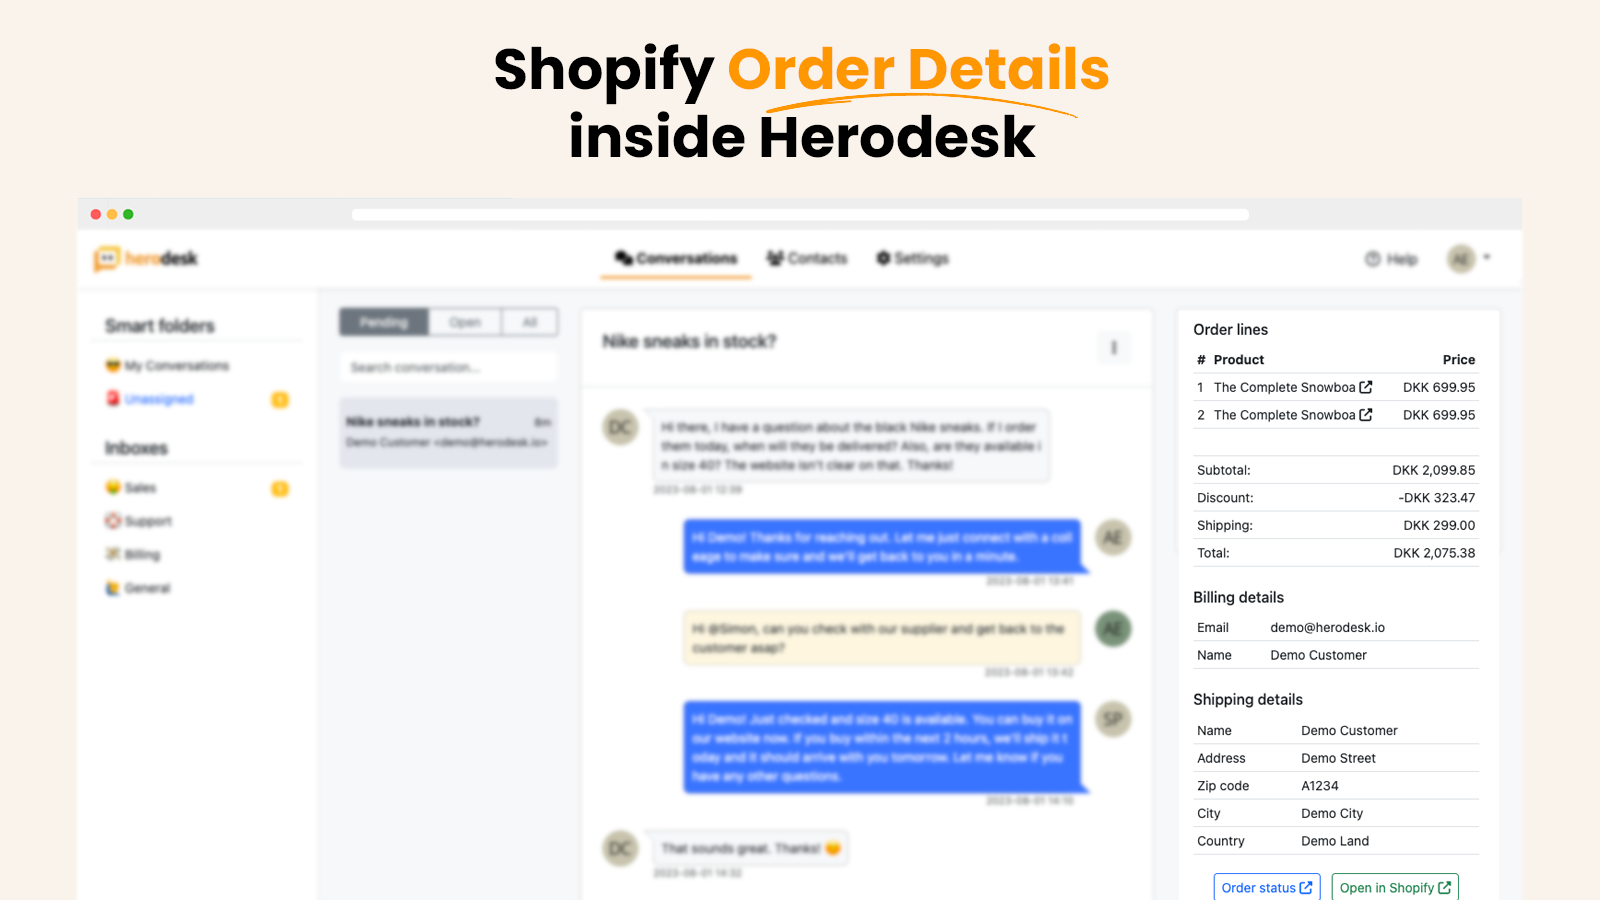 Shopify order details inside Herodesk